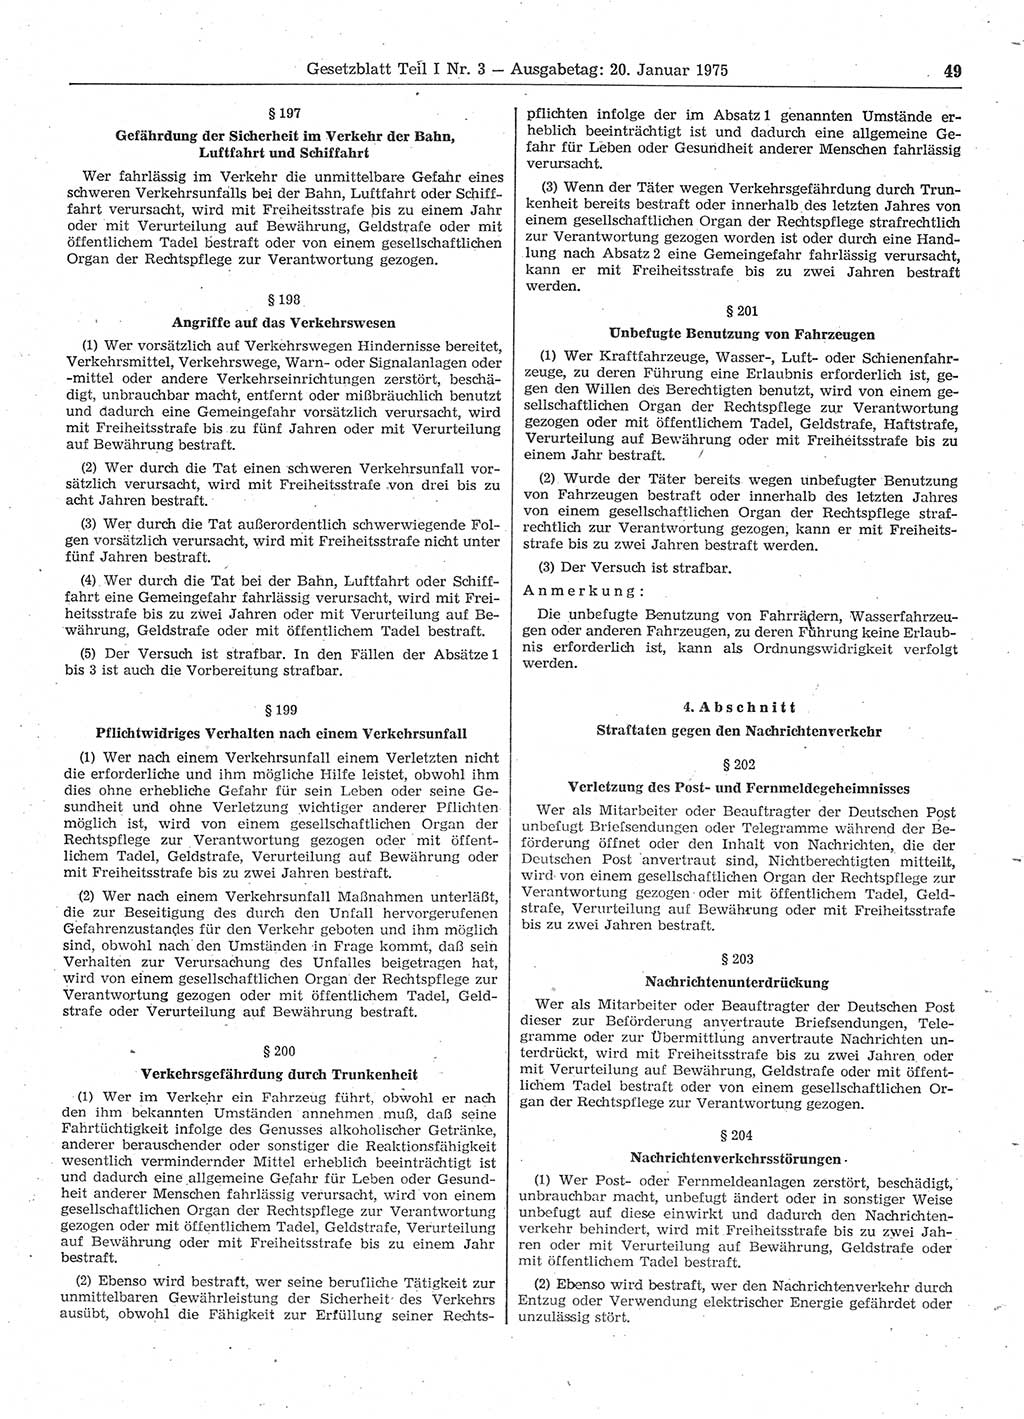 Gesetzblatt (GBl.) der Deutschen Demokratischen Republik (DDR) Teil Ⅰ 1975, Seite 49 (GBl. DDR Ⅰ 1975, S. 49)